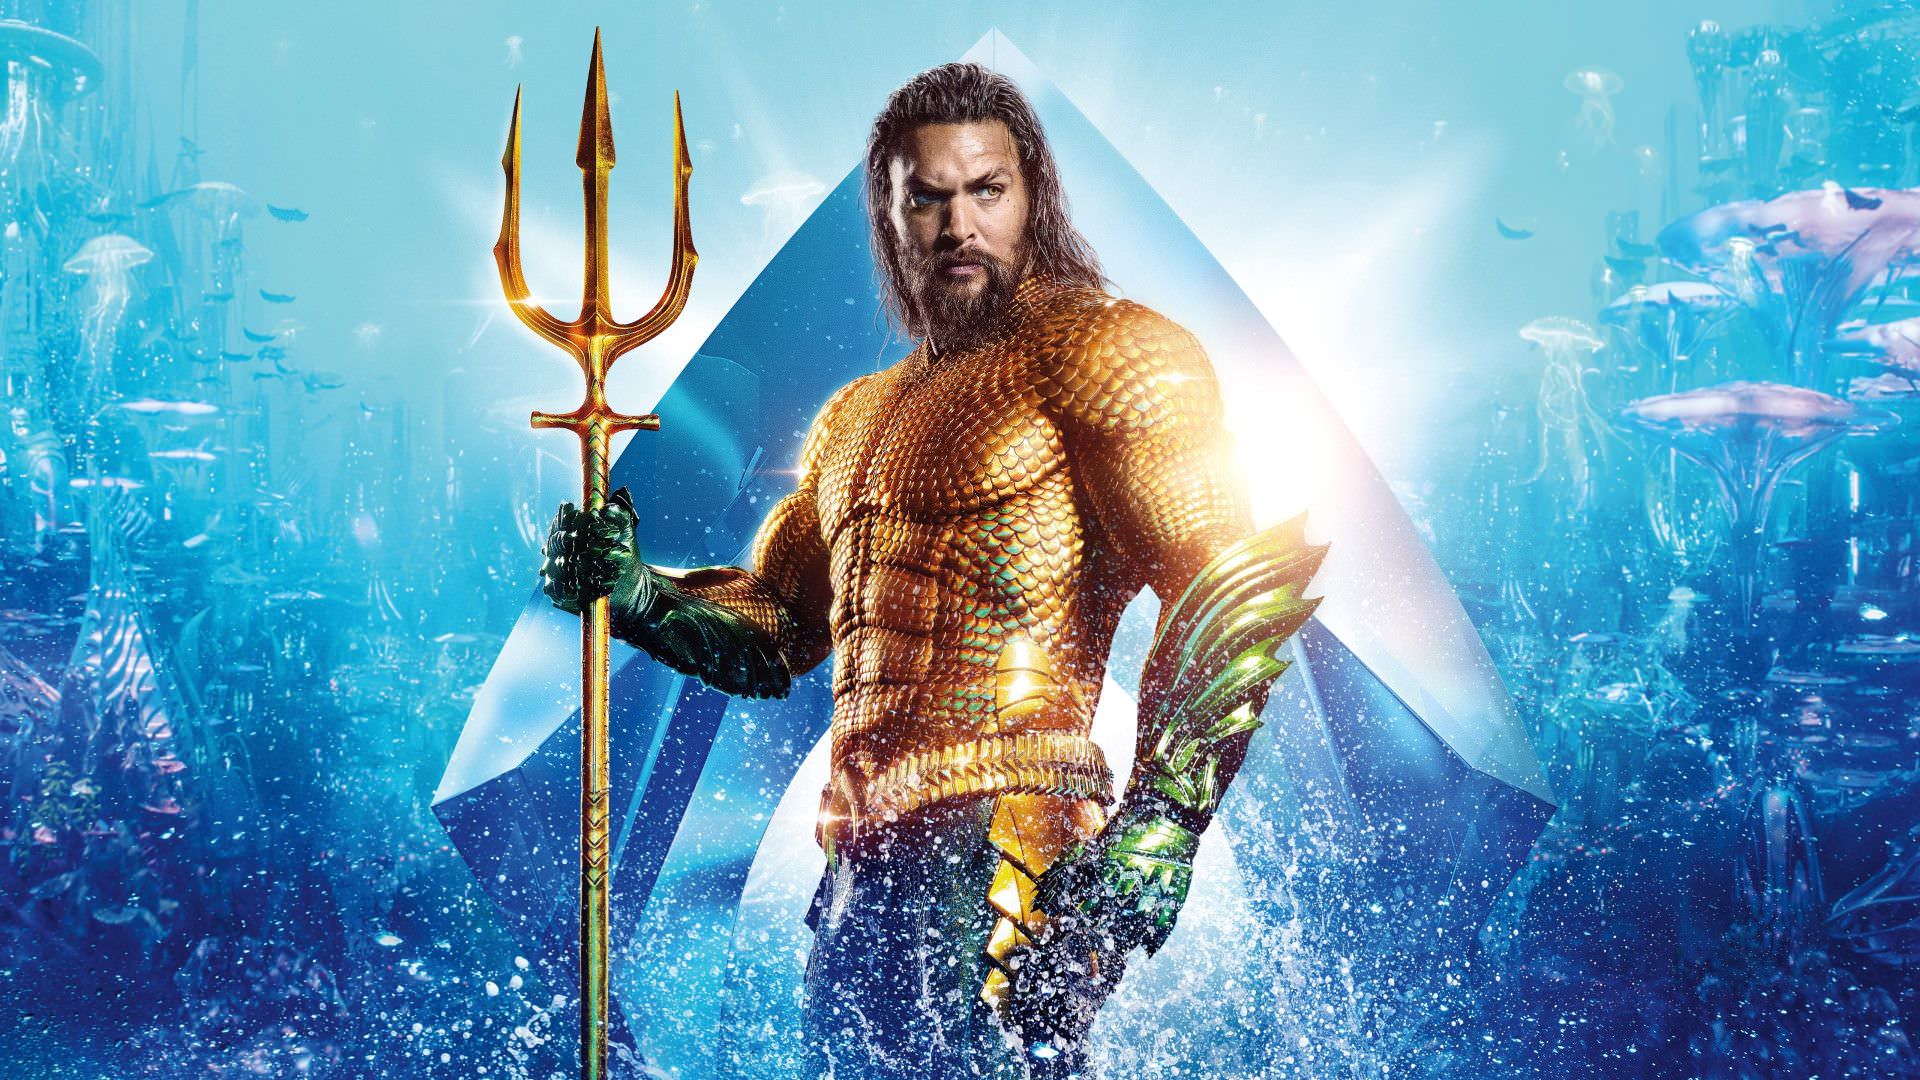 جیسون موموآ در نقش آکوامن در زره طلایی رنگش در پوستر فیلم Aquaman